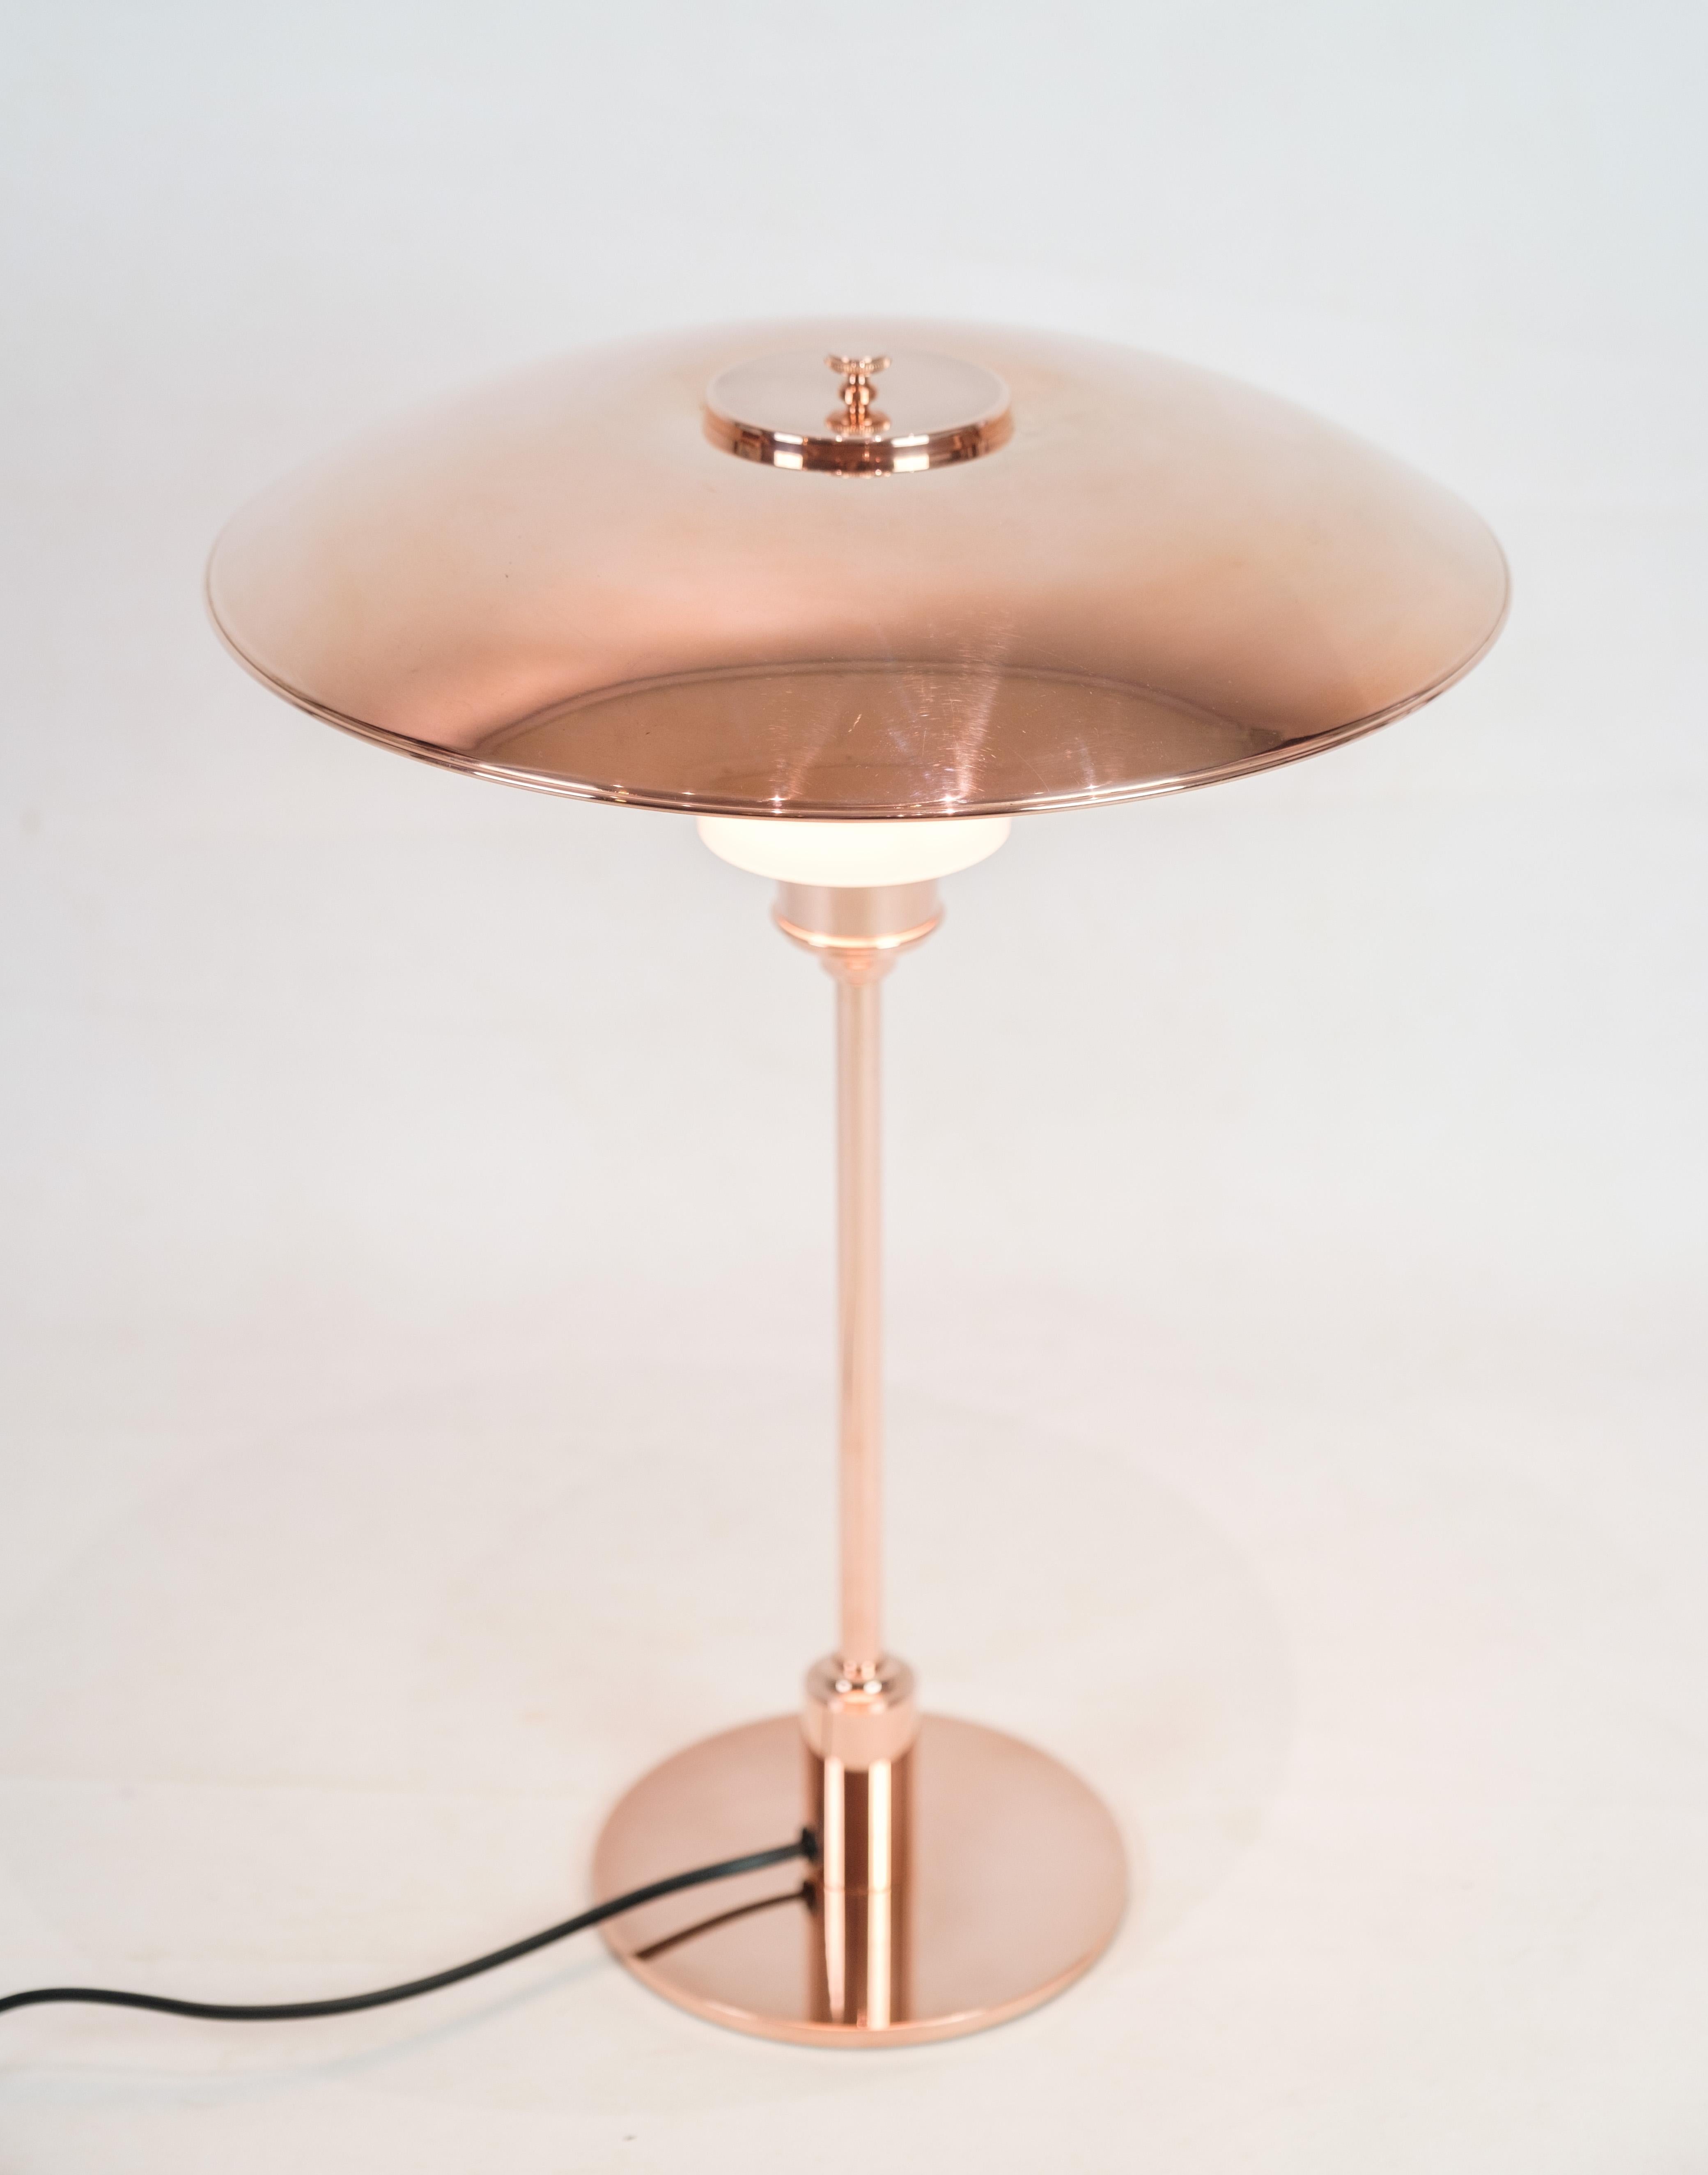 Lampe de table PH, modèle PH3½-2½, édition limitée, conçue par Poul Henningsen et fabriquée par Louis Poulsen. La lampe est fabriquée en cuivre avec un abat-jour supérieur en cuivre et deux abat-jours inférieurs en verre opalin blanc. Un écran